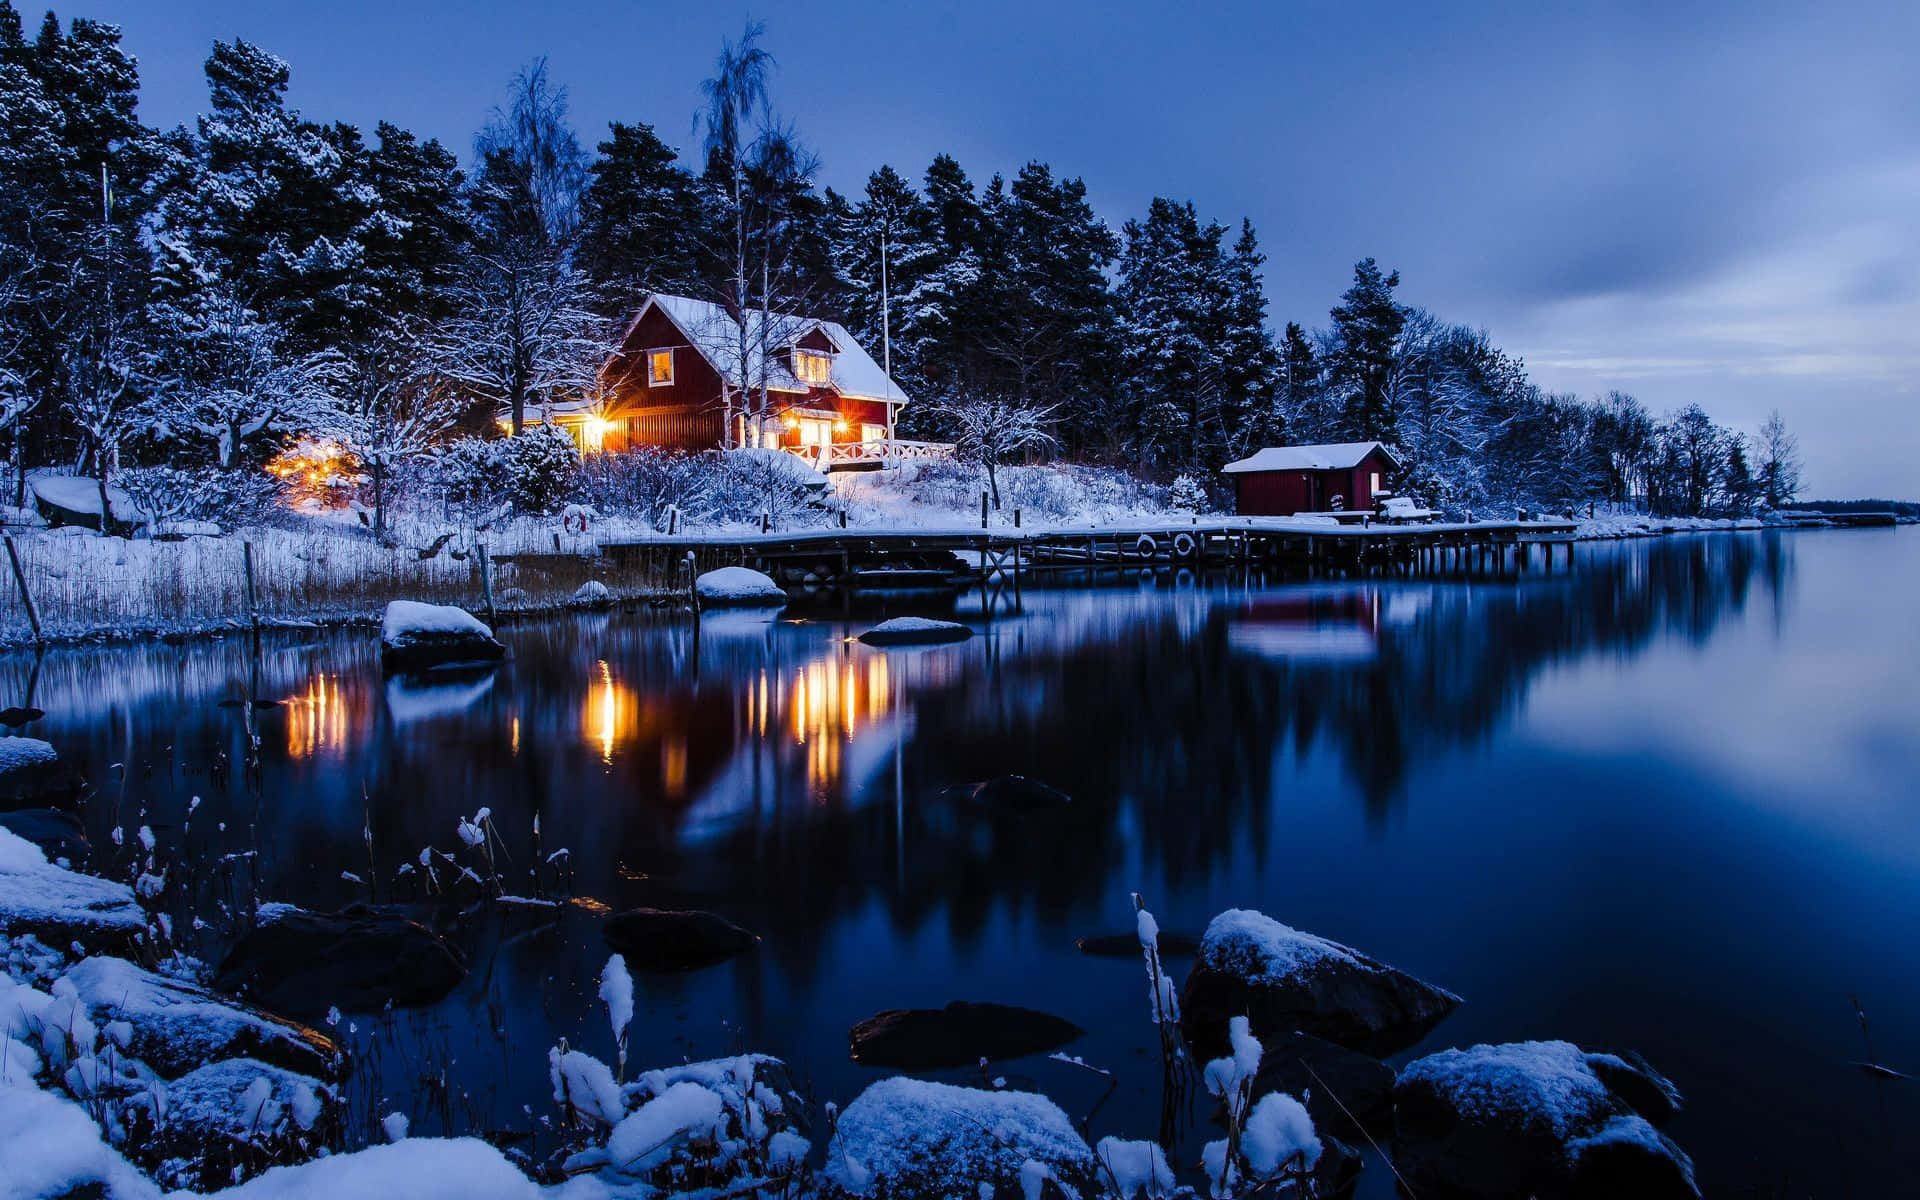 Genießensie Eine Beruhigende Winterlandschaft In All Ihrer Schönheit